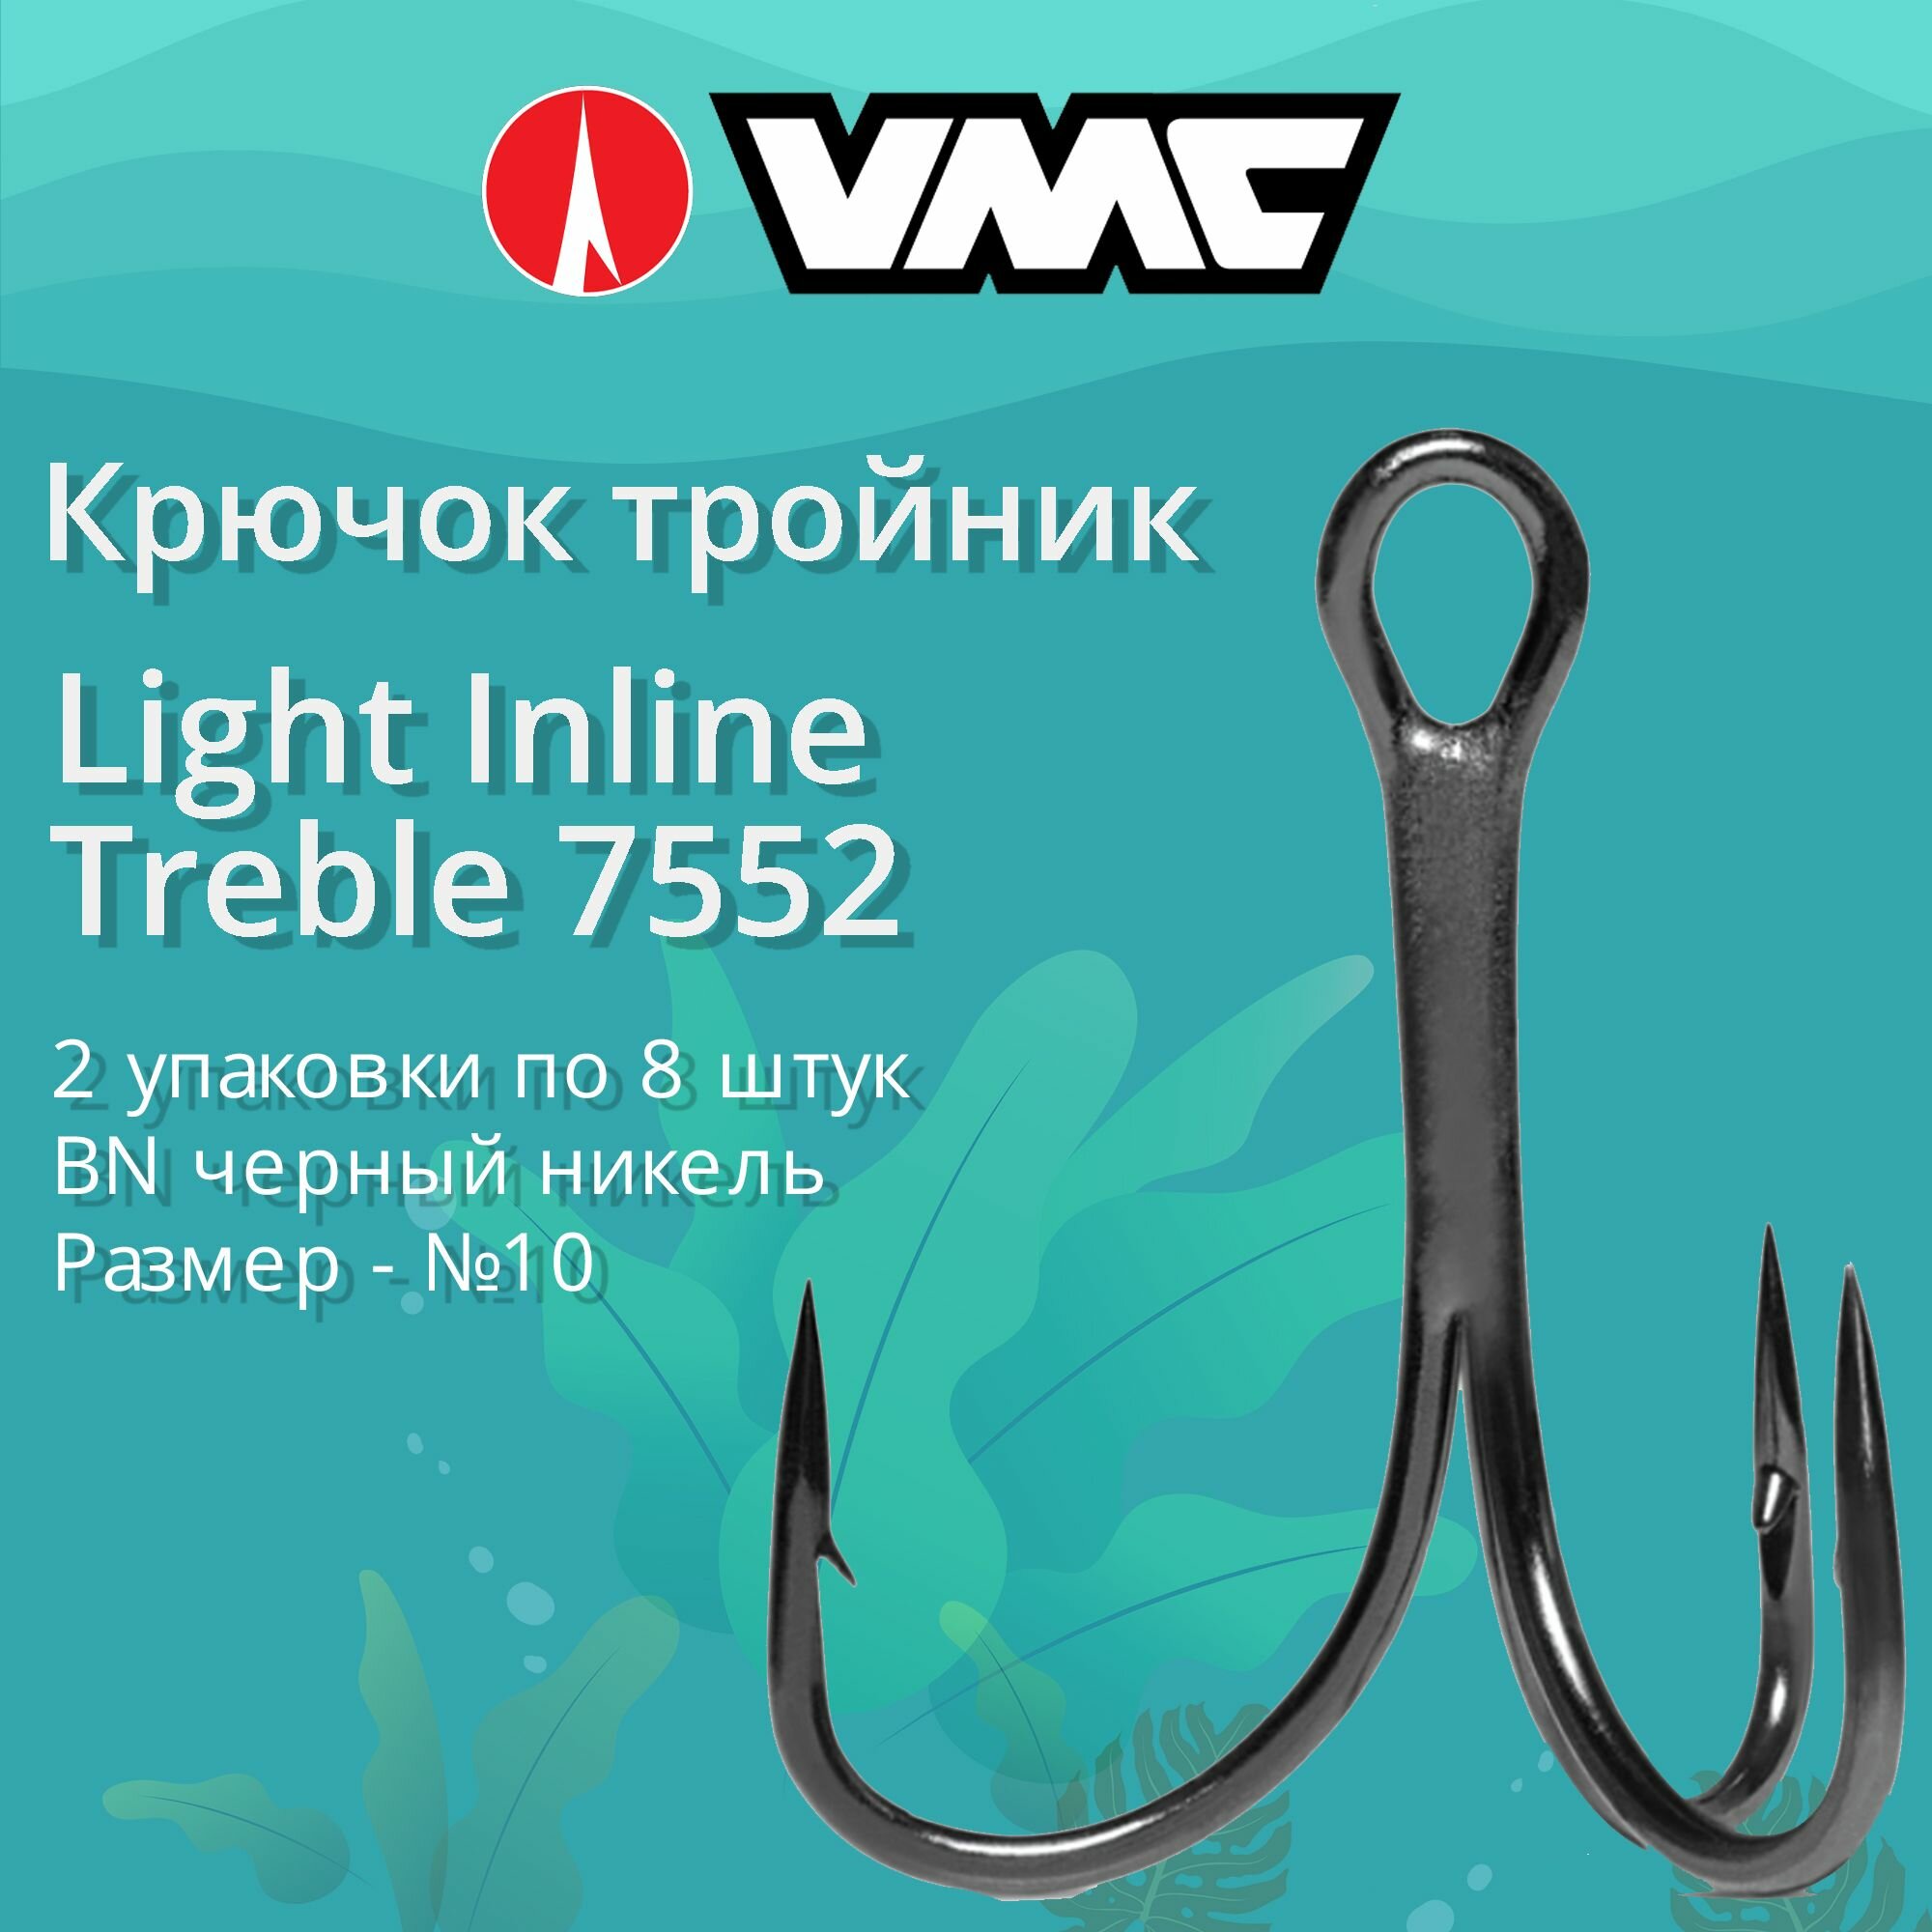 Крючки для рыбалки (тройник) VMC Light Inline Treble 7552 BN (черн. никель) №10 (2 упаковки по 8 штук)